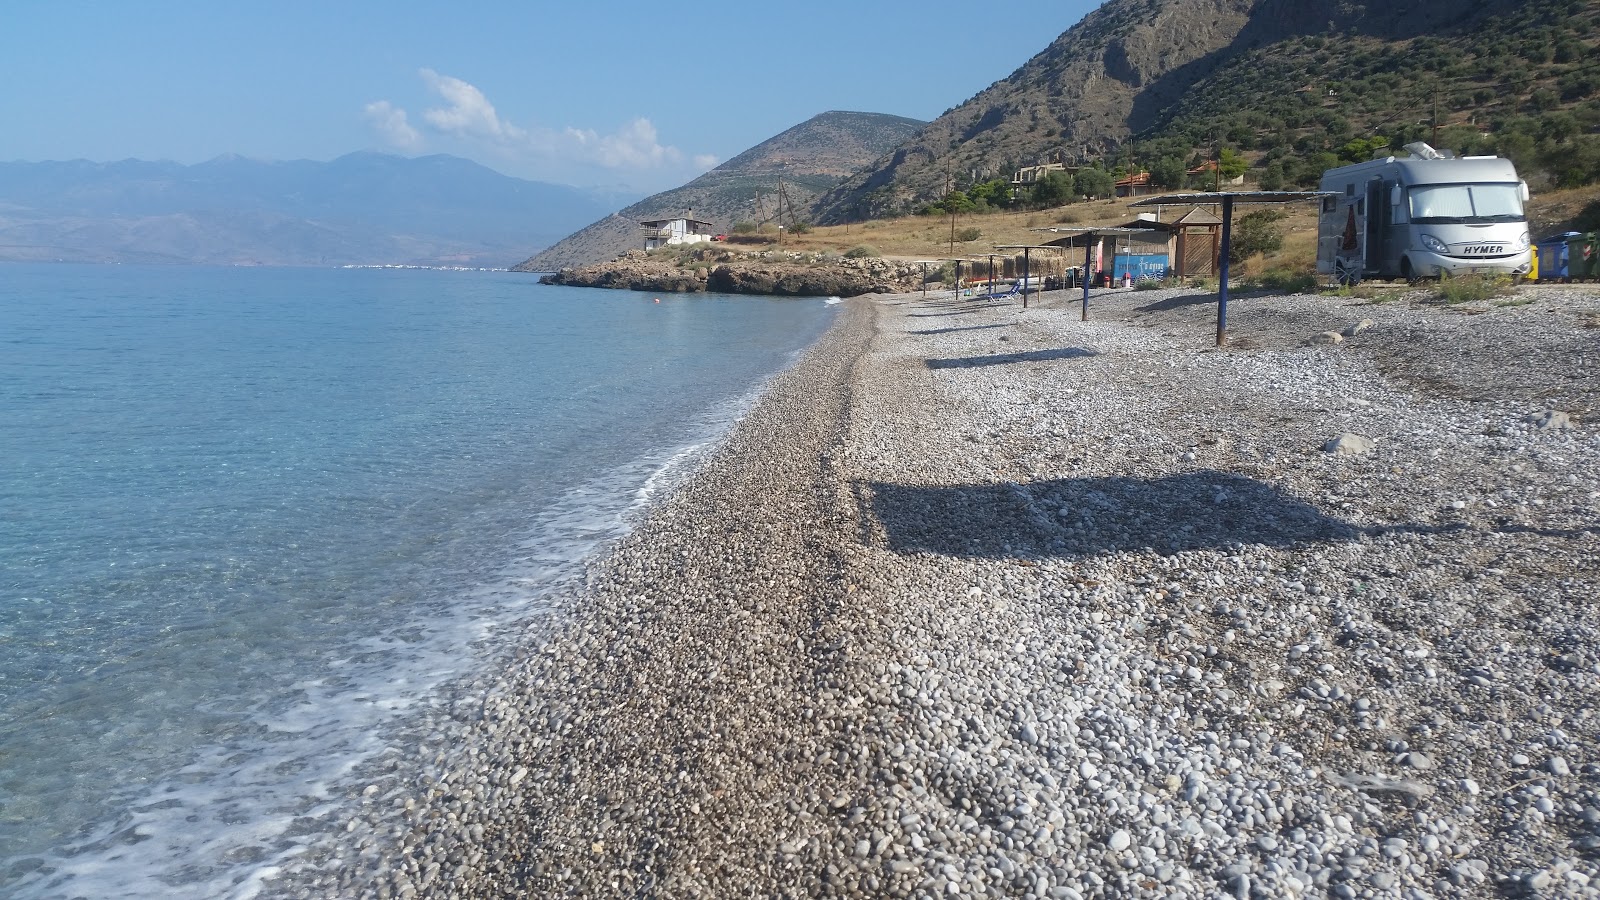 Agios Minas beach'in fotoğrafı hafif ince çakıl taş yüzey ile